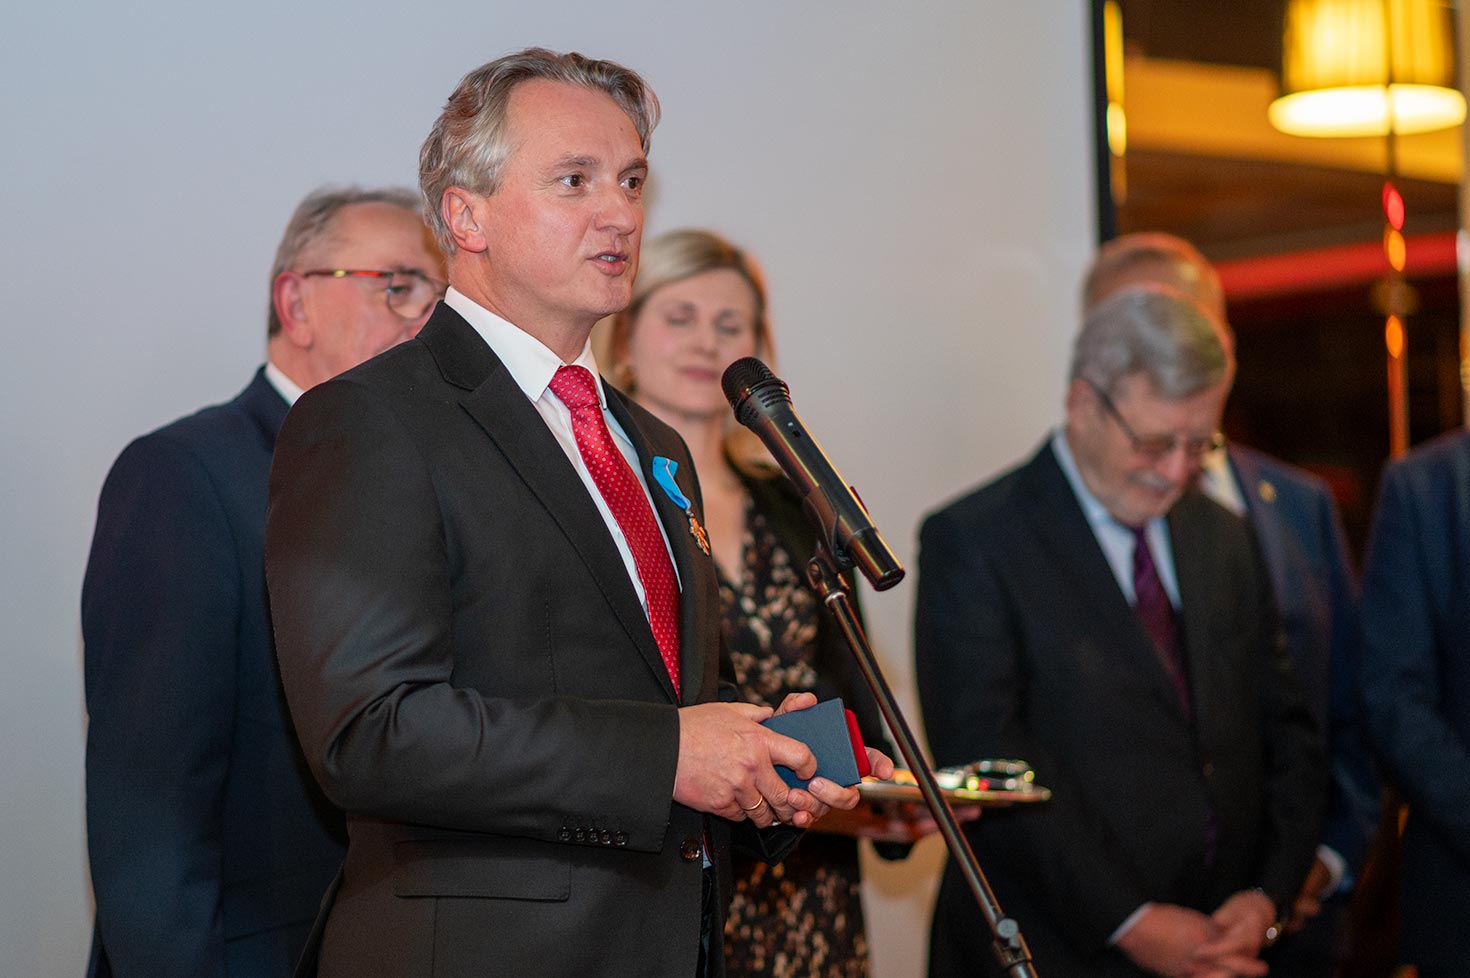 Alexander Orlowski, prezes zarządu Transgourmet Polska, otrzymał honorową odznakę